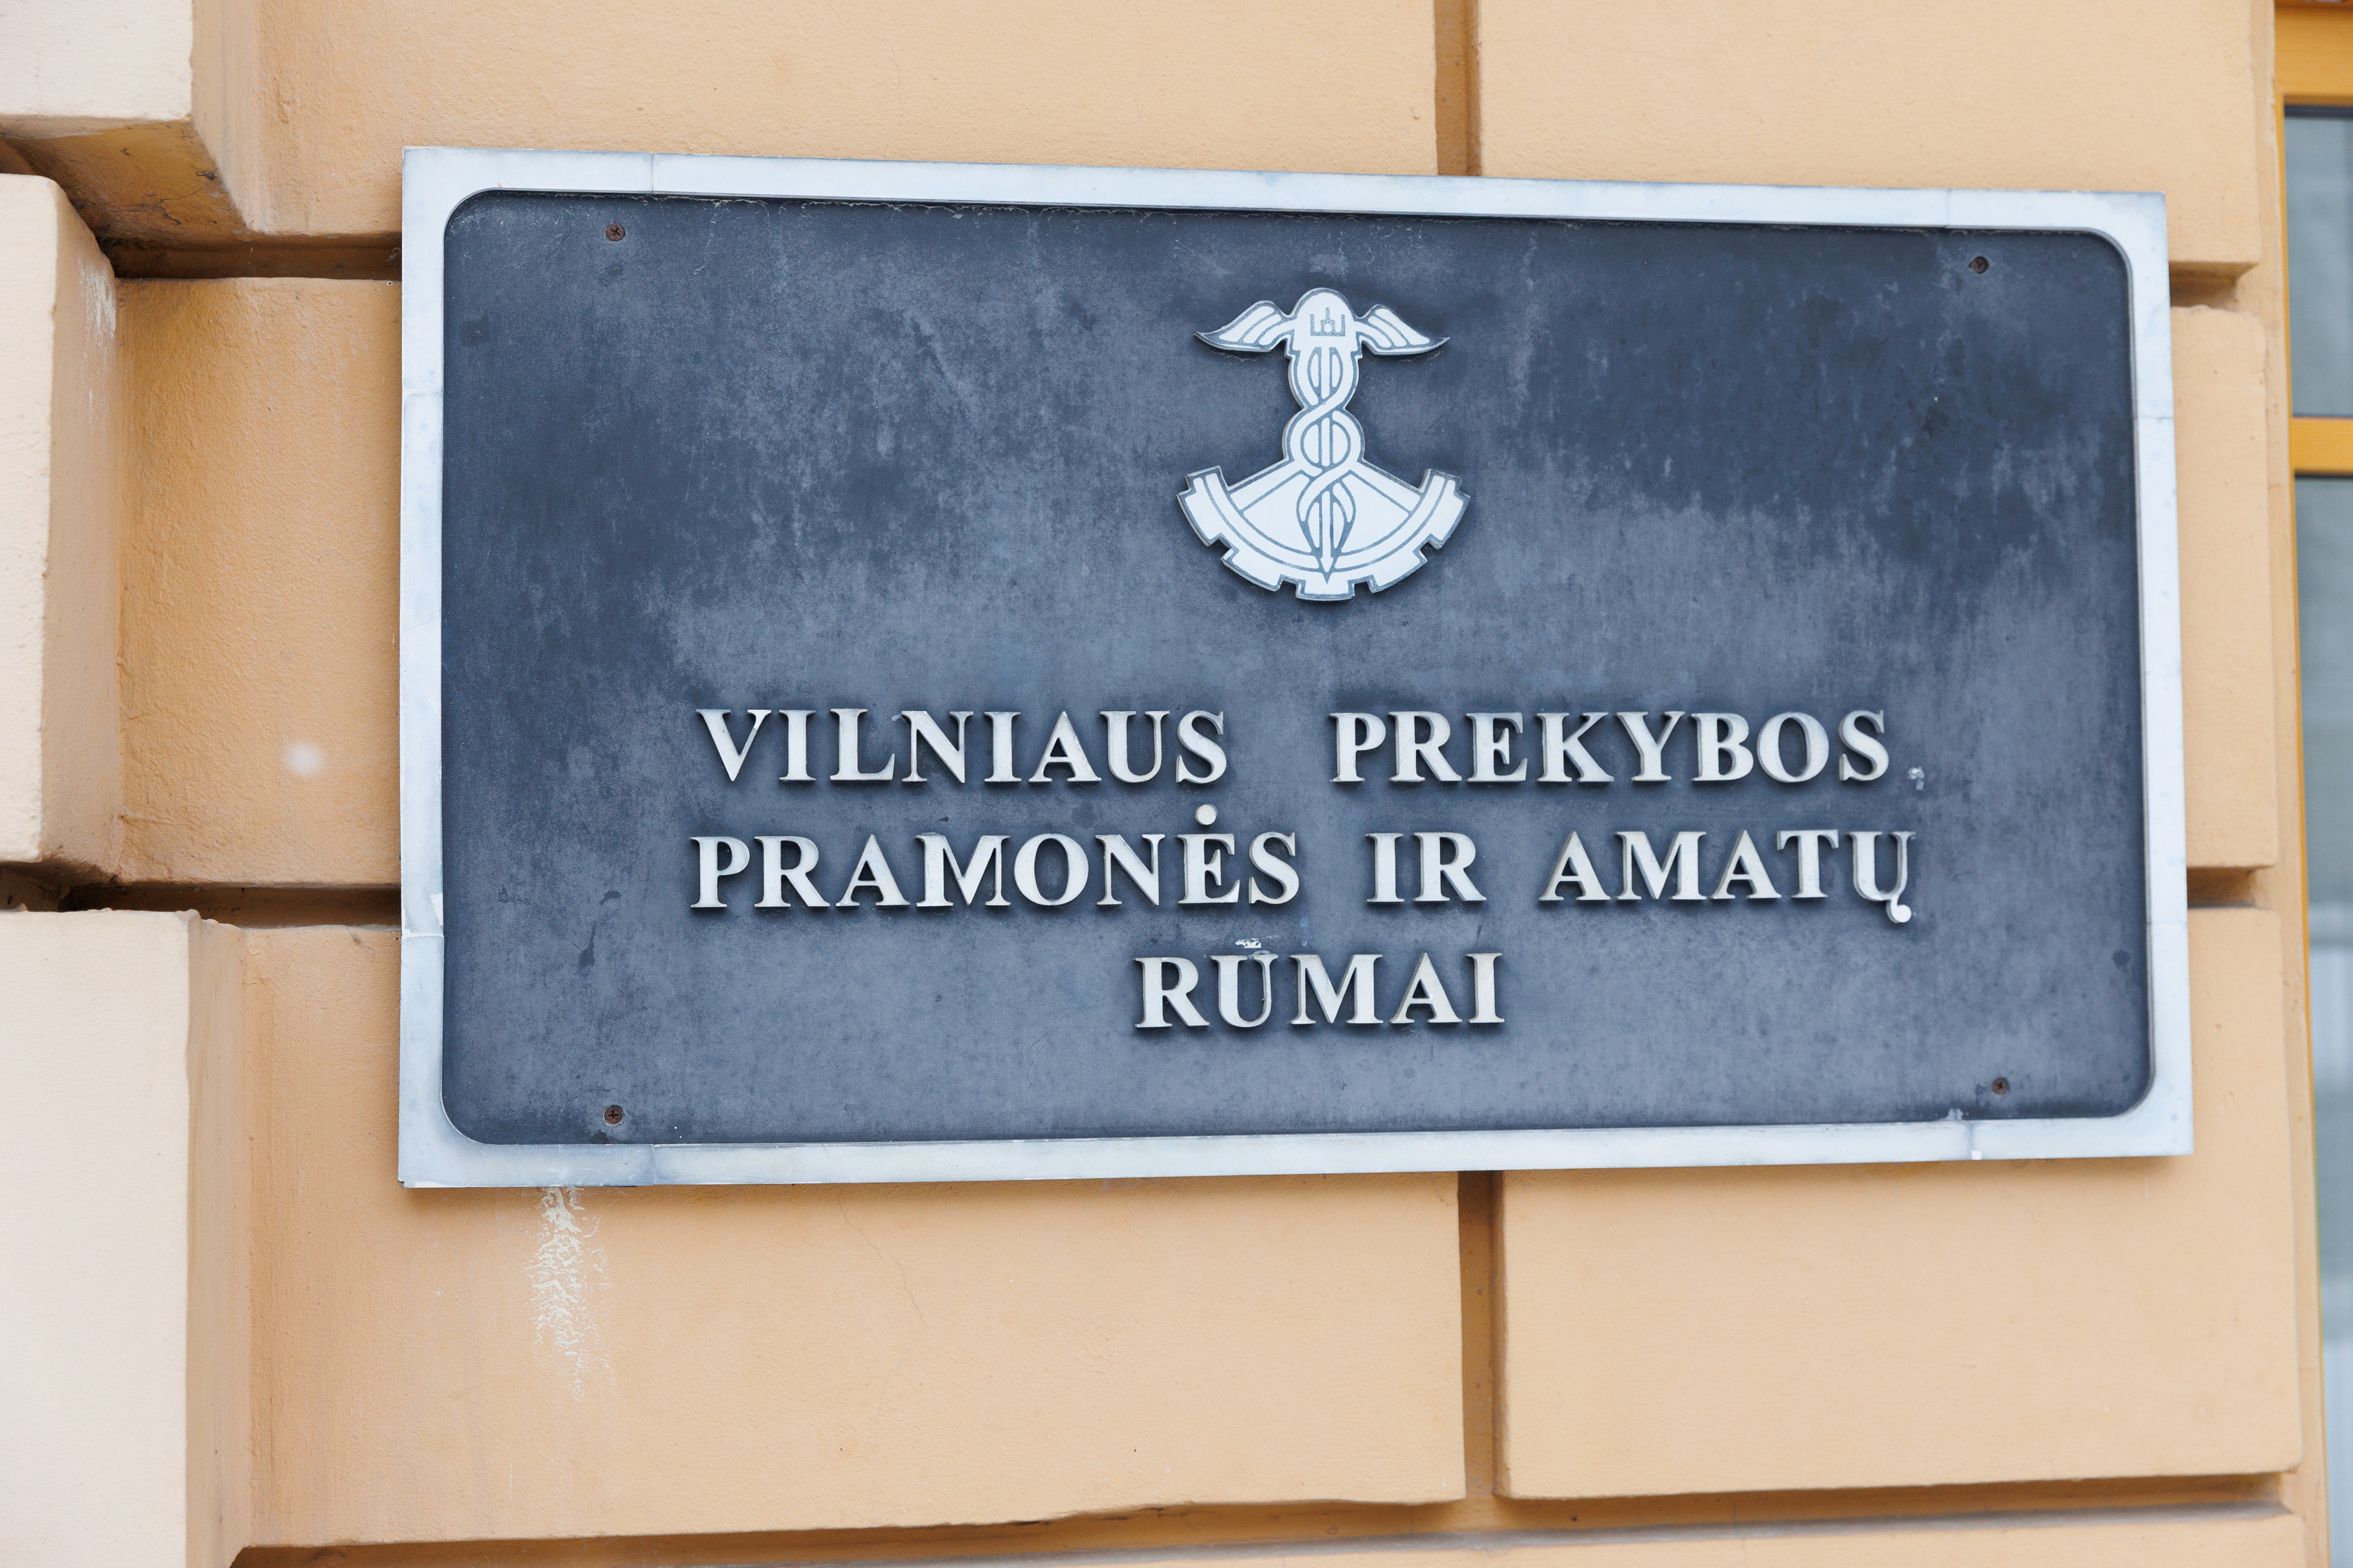 Vilniaus prekybos pramonės ir amatų rūmaiT.Bauro nuotr.